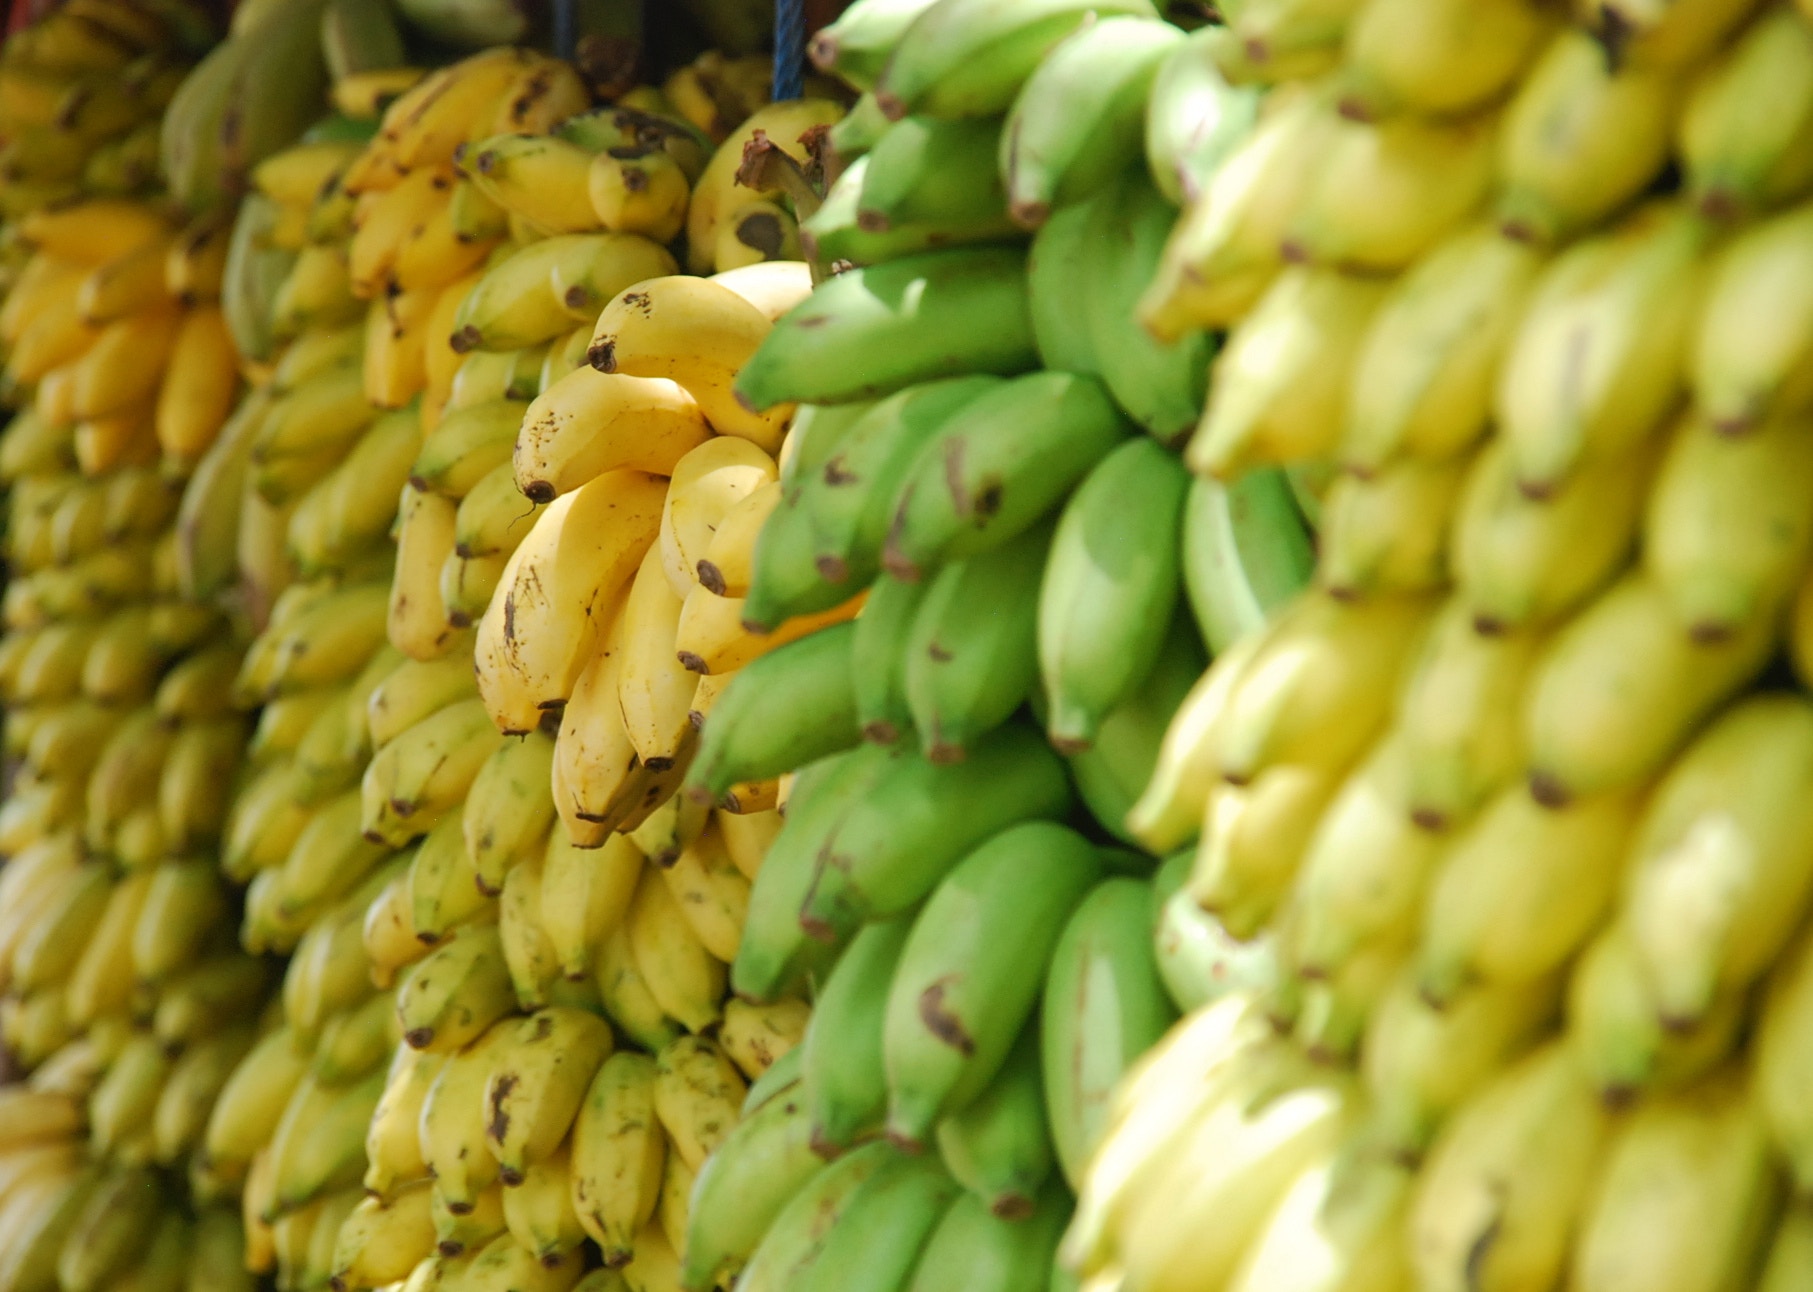 La banane fait partie des fruits climactériques, un fruit qui continue à mûrir après récolte. © Botte lohr, Unsplash